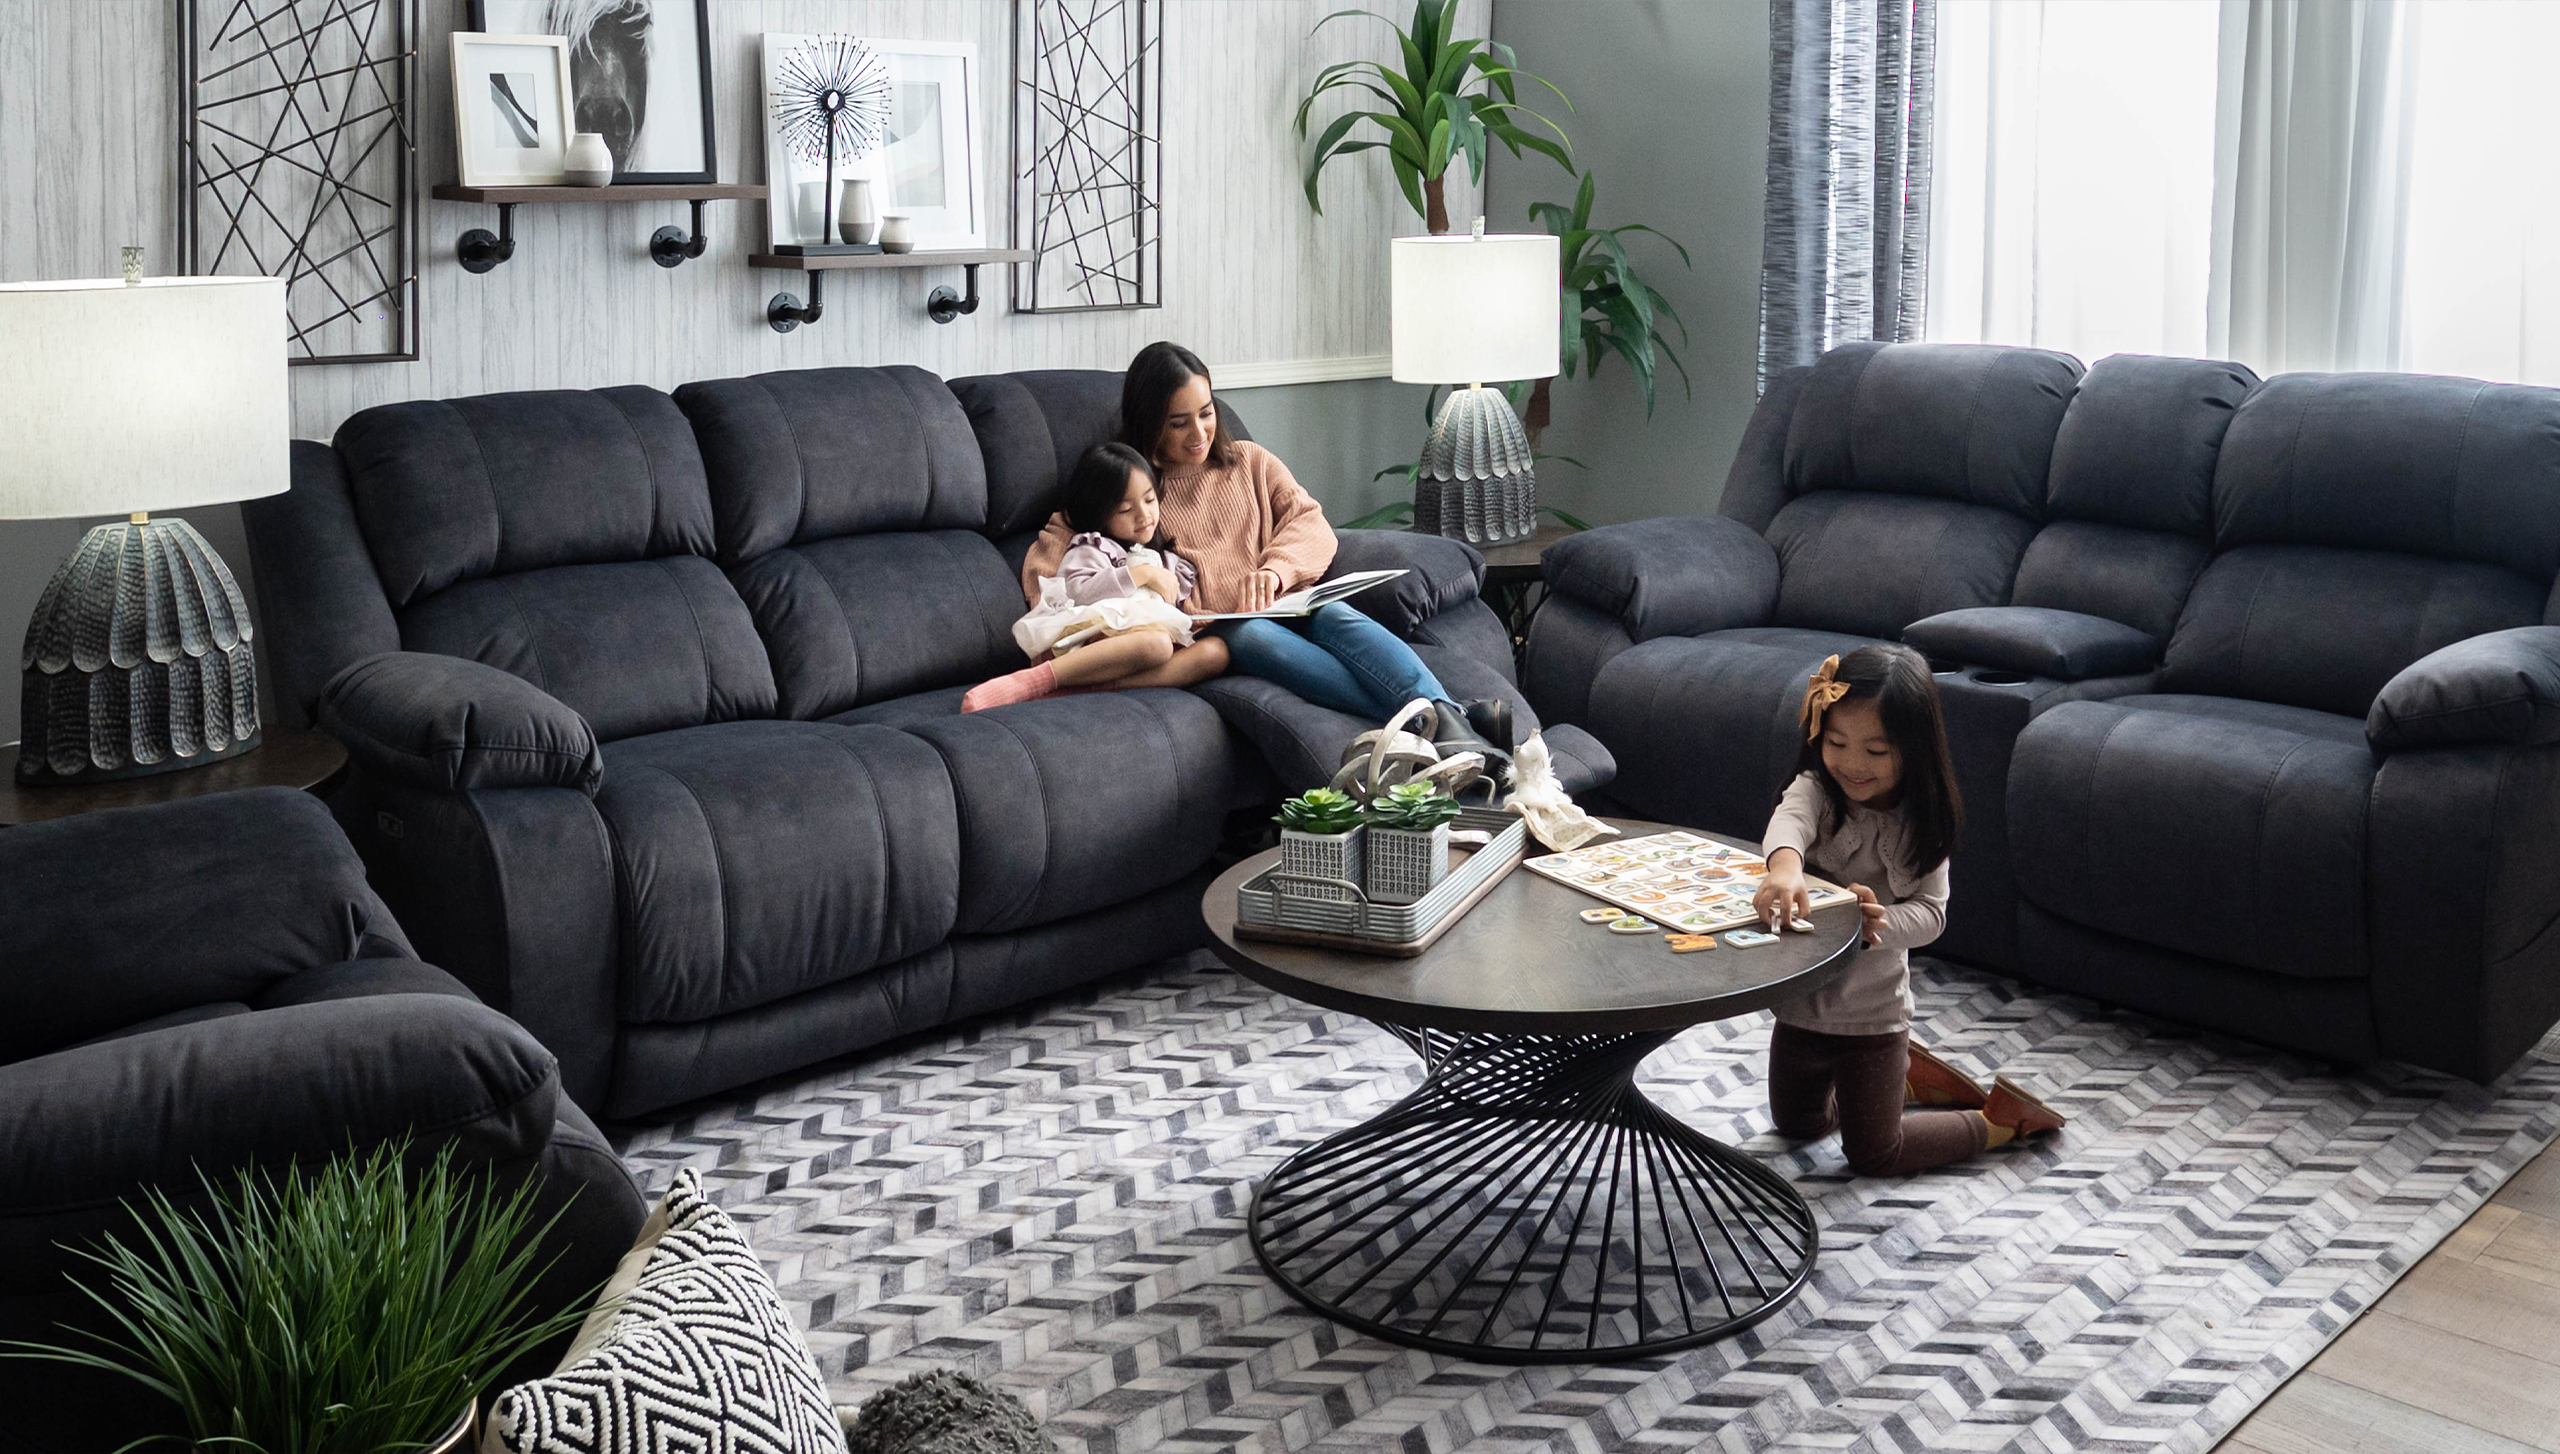 Choosing Living Room Furniture